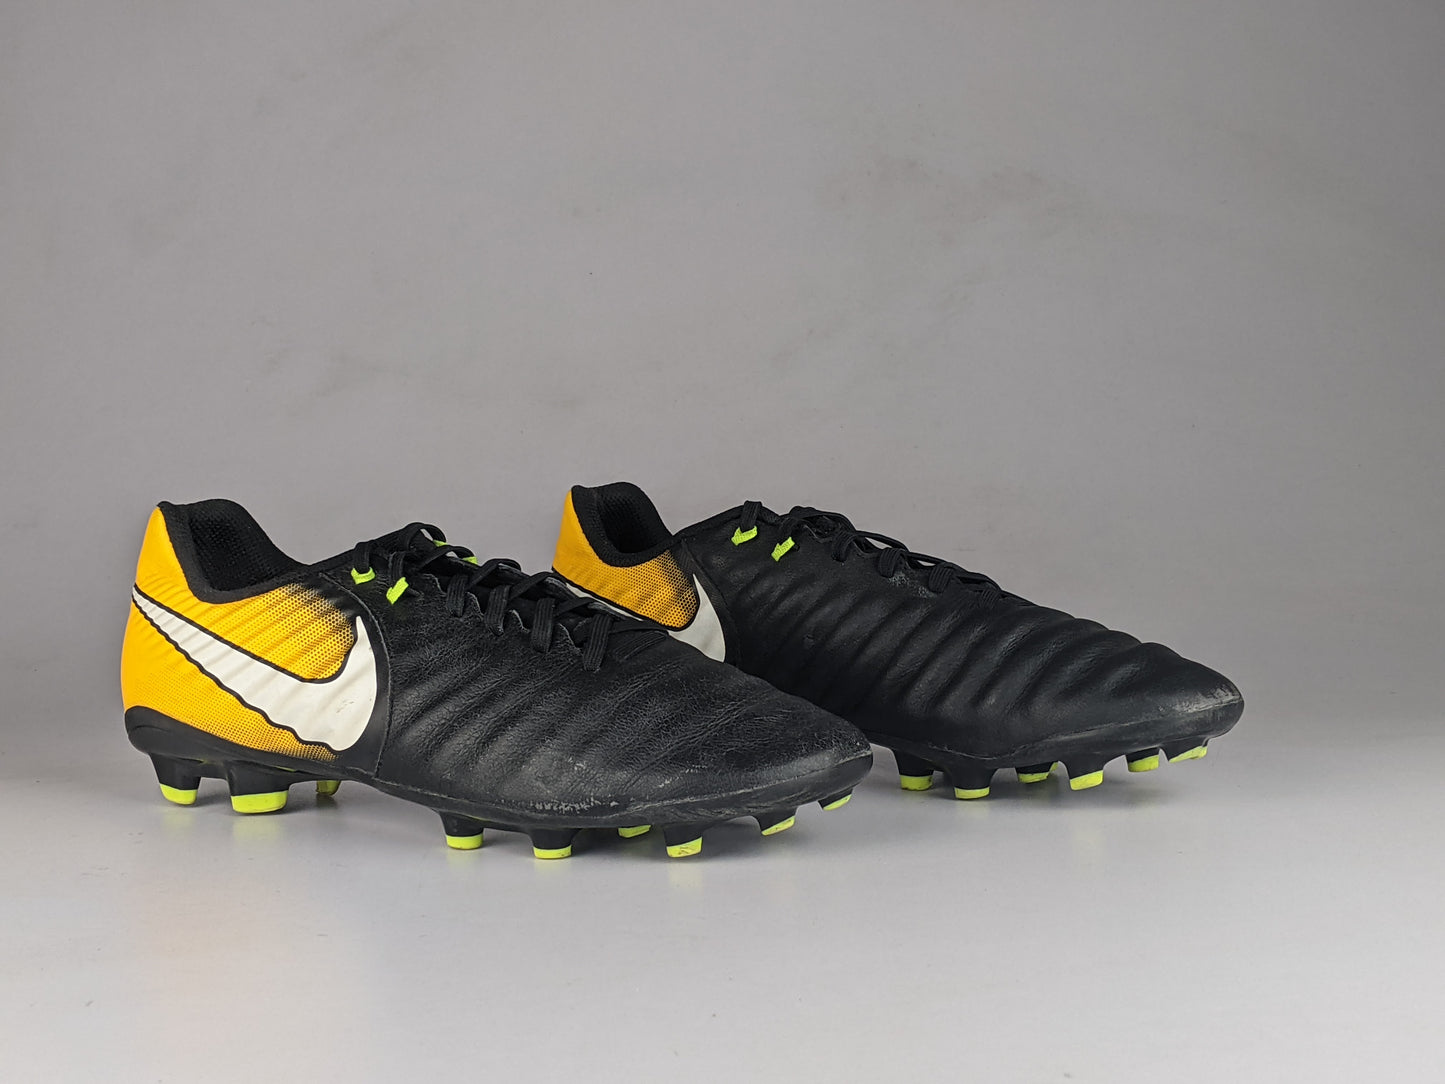 Nike Tiempo Ligera IV FG 'Black/Yellow